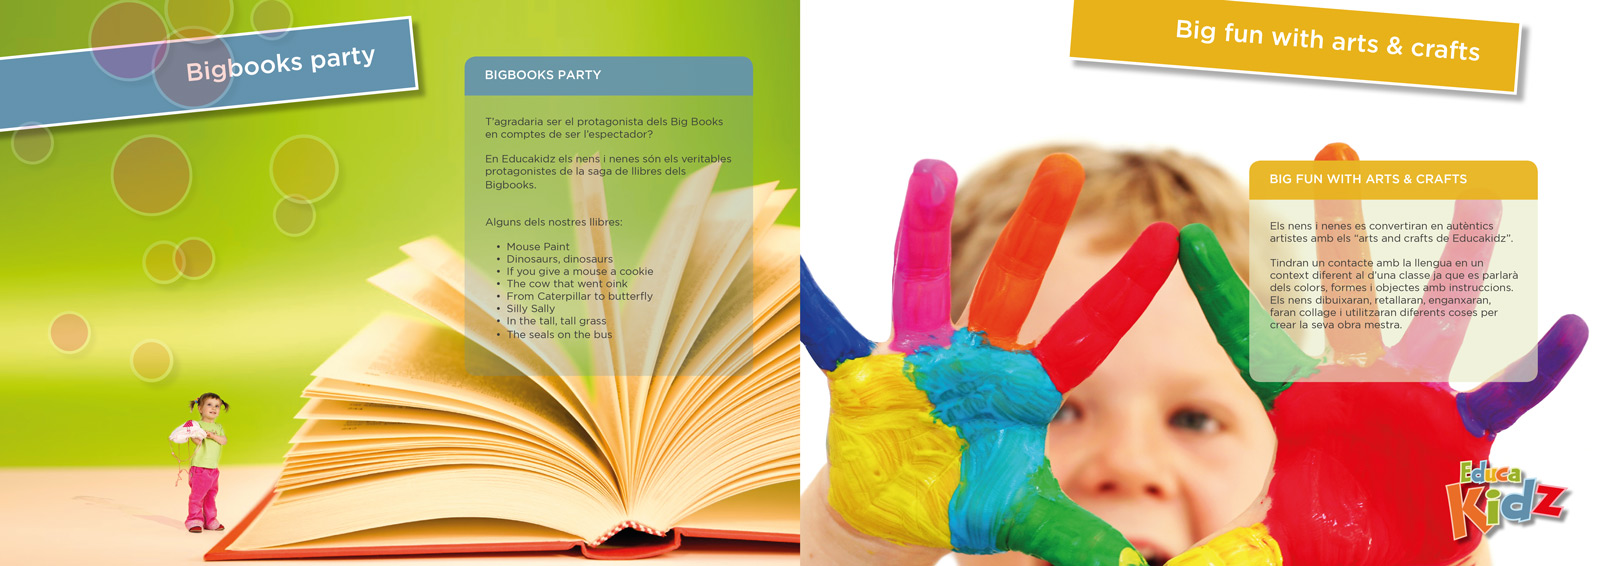 Diseño gráfico y creativo de maquetación de catálogos de productos para centro de enseñanza infantil de idiomas